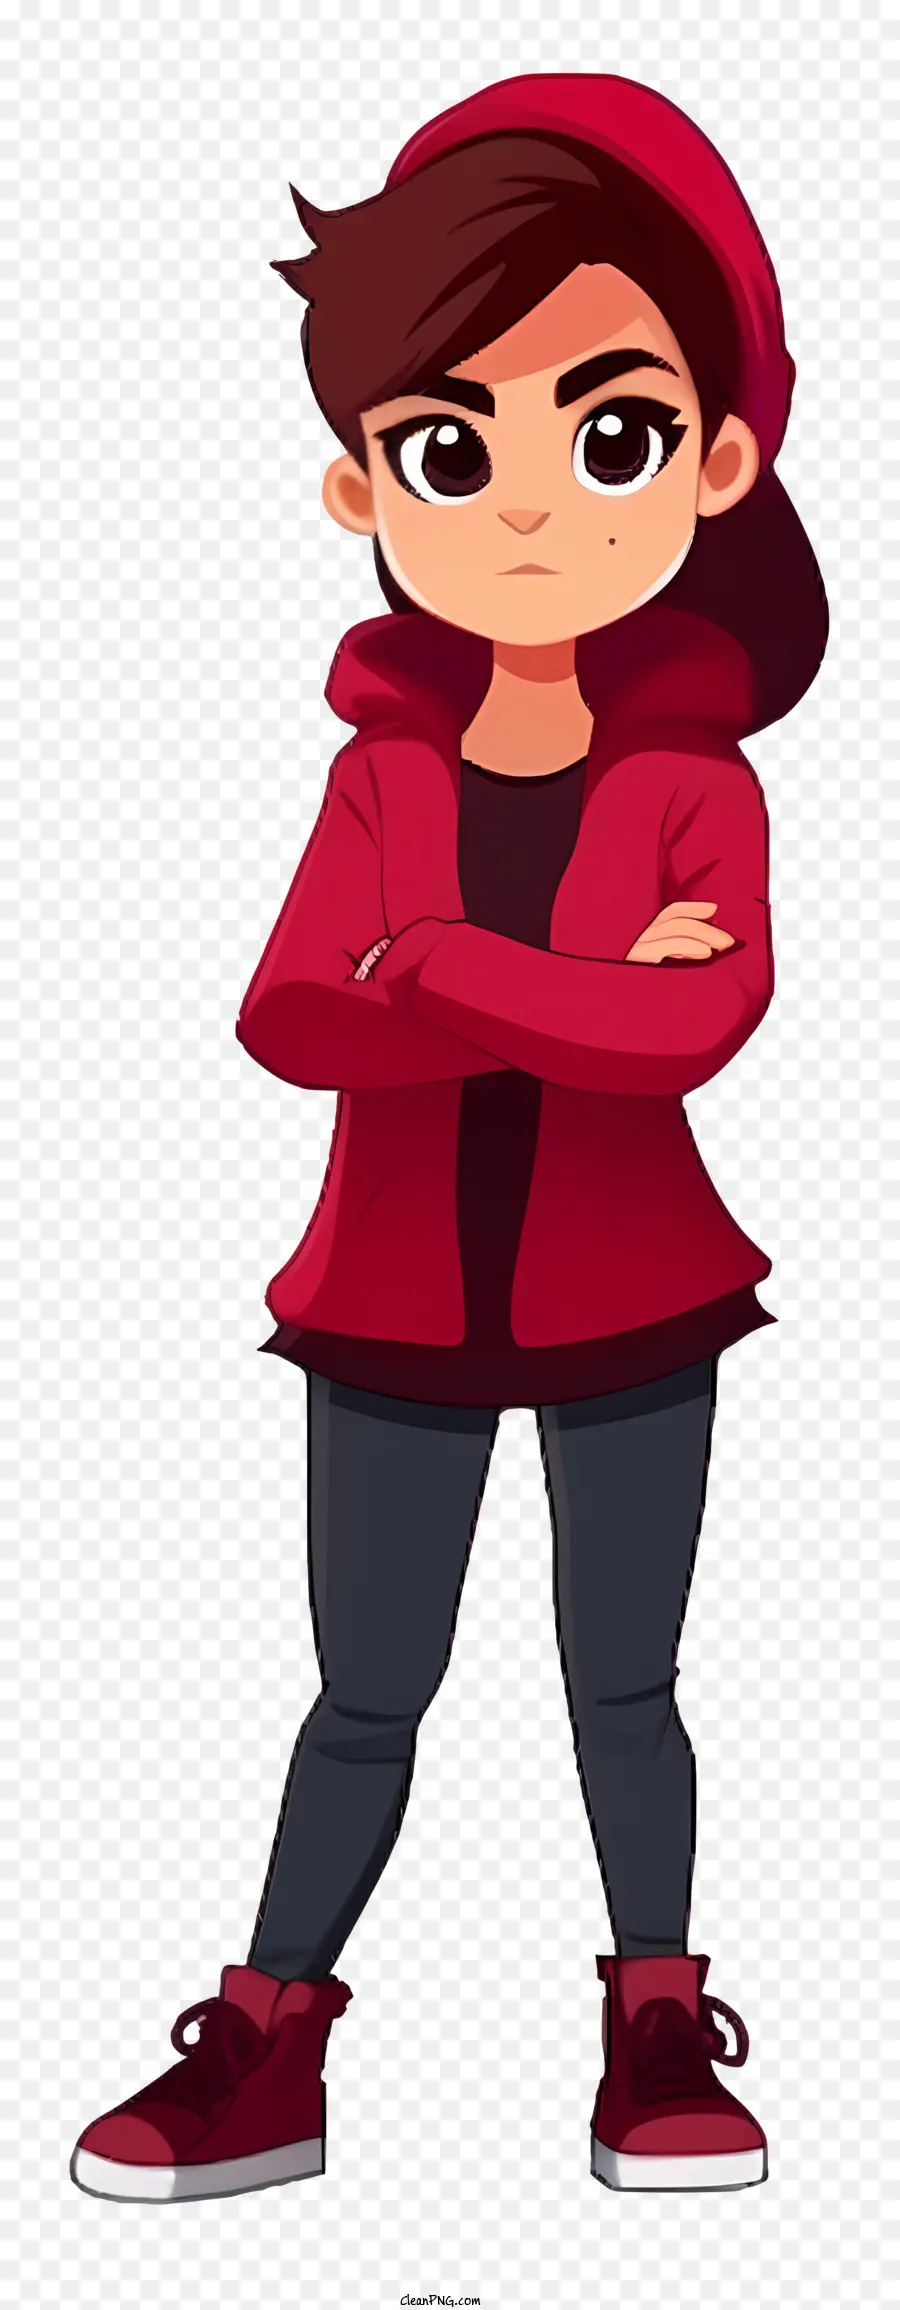 Phim hoạt hình mặc màu đỏ người trẻ áo khoác đỏ quần đen biểu cảm bình thường - Người trẻ mặc áo khoác đỏ và quần đen